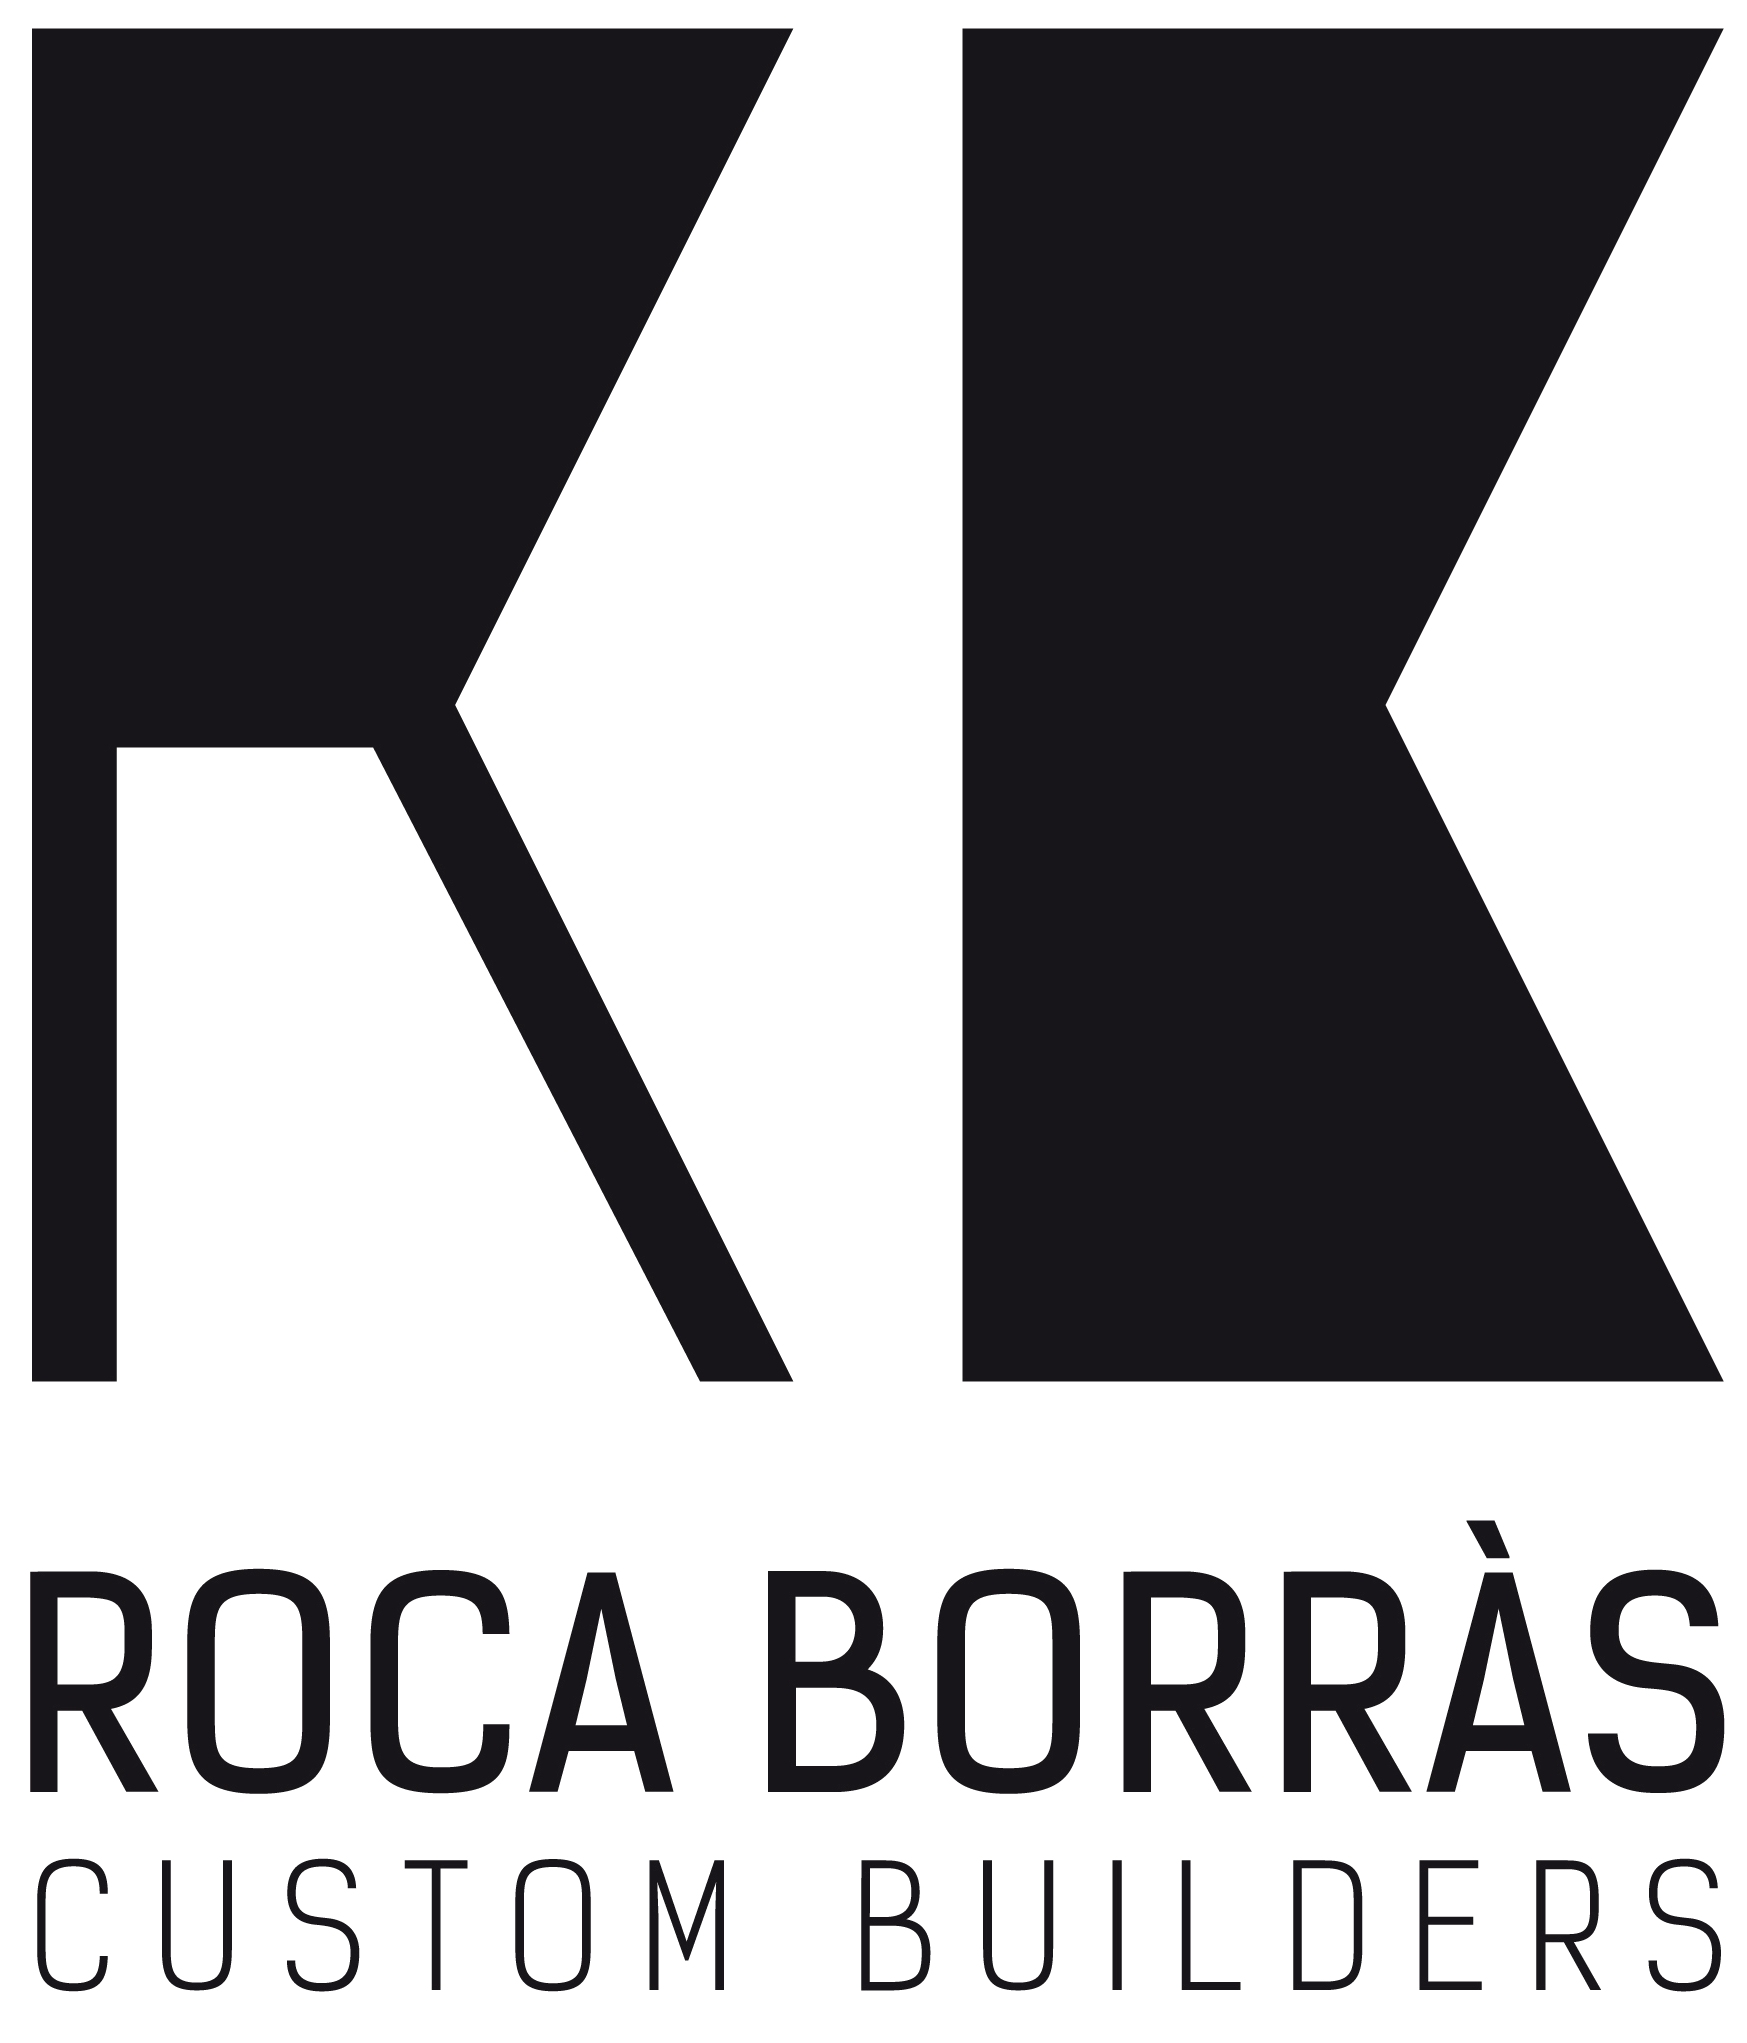 RocaBorras